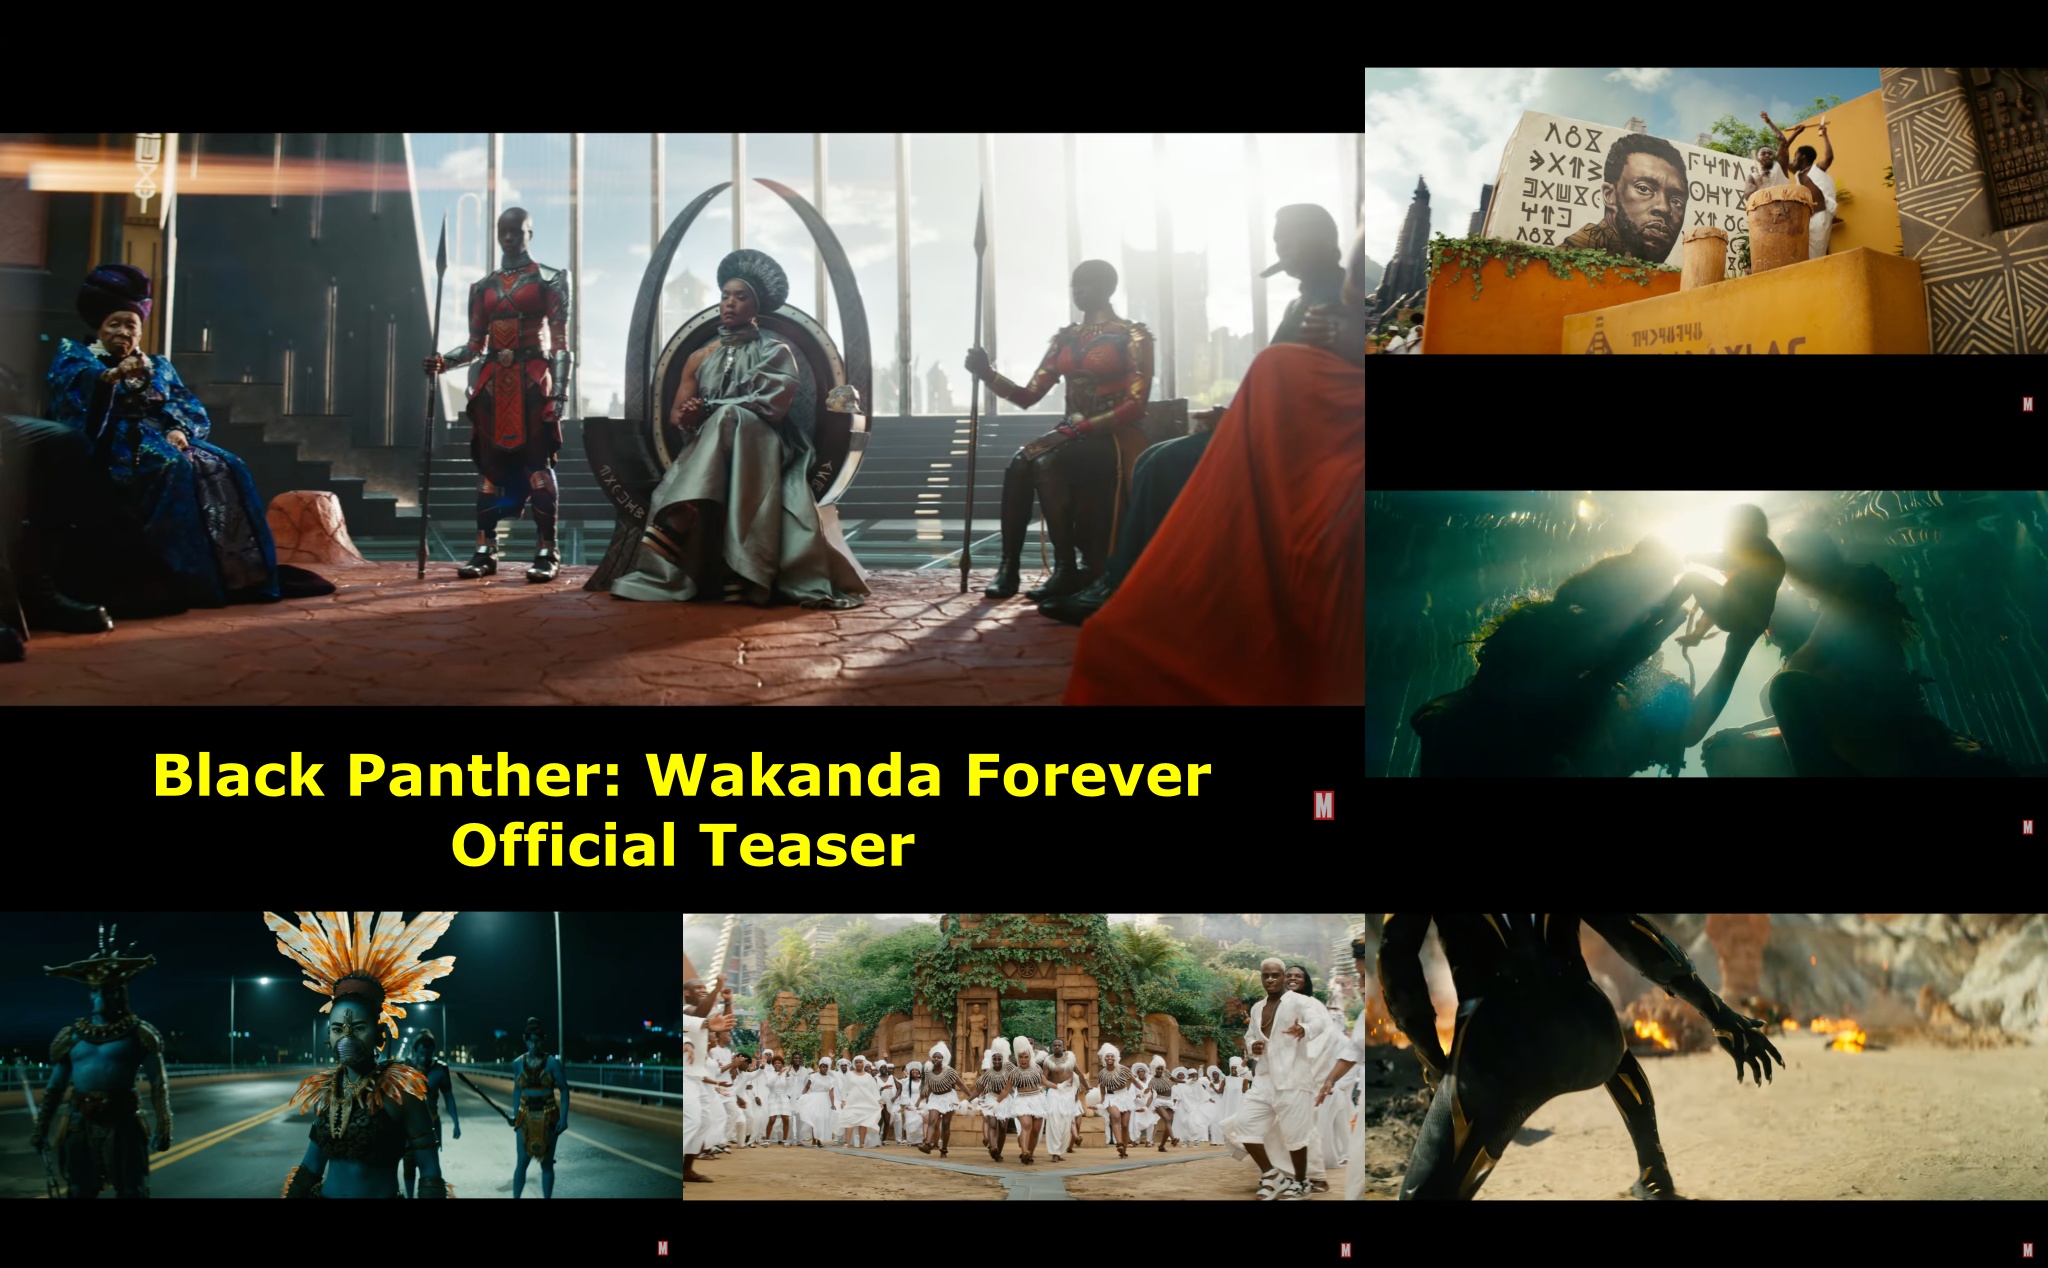 Teaser "Black Panther: Wakanda Forever": Tôn vinh T’Challa, xung đột giữa các tộc người